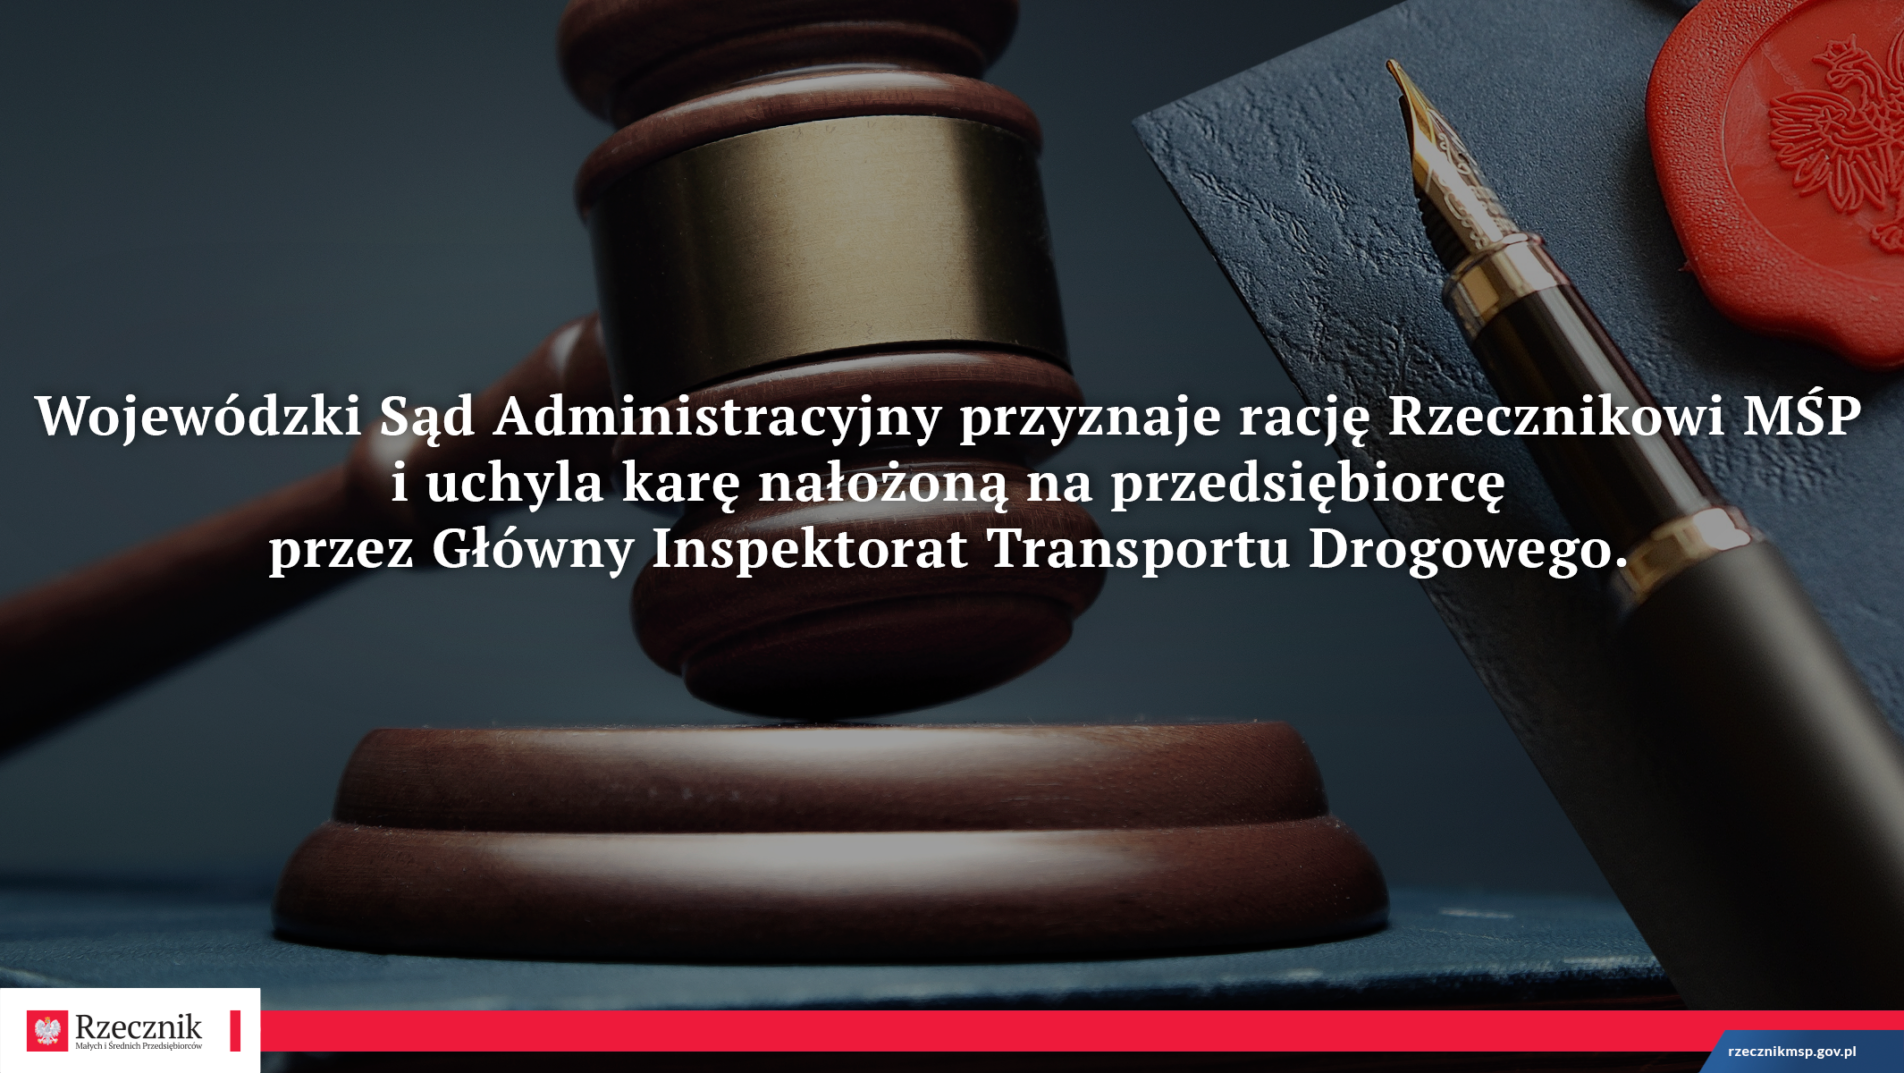 Wojewódzki Sąd Administracyjny przyznaje rację Rzecznikowi MŚP i uchyla karę nałożoną na przedsiębiorcę przez Główny Inspektorat Transportu Drogowego.